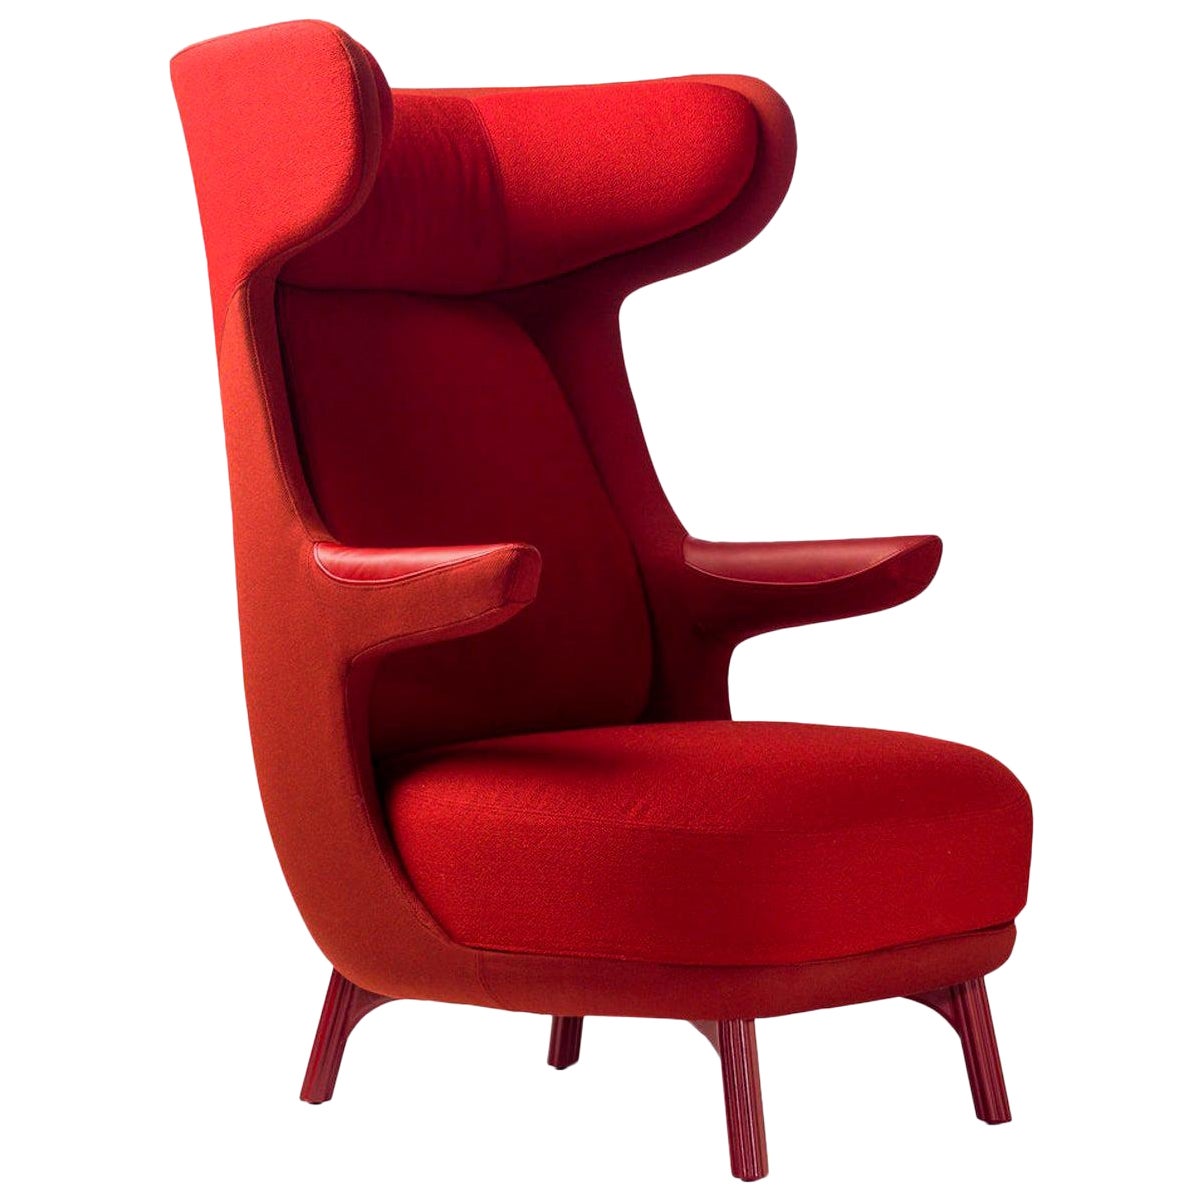 Jaime Hayon, fauteuil Dino tapissé de tissu rouge monocolore  en vente